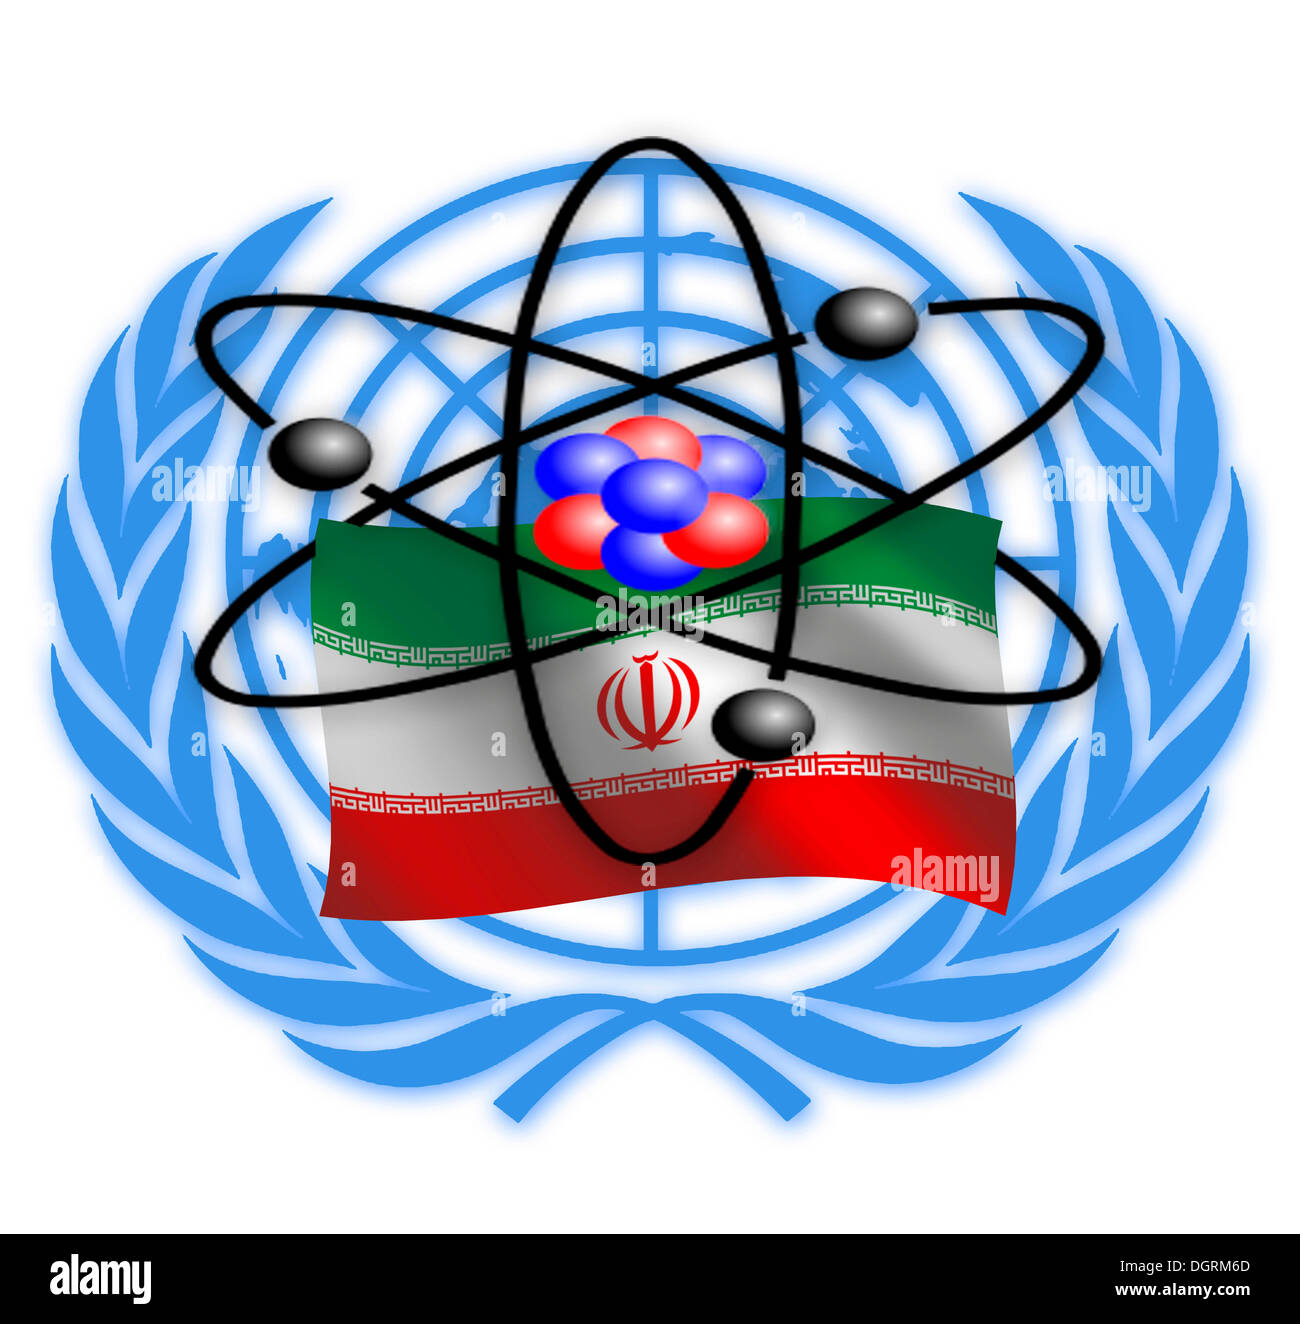 Symbolisches Bild, Atomstreit zwischen Iran und den Vereinten Nationen, die internationale Gemeinschaft, illustration Stockfoto